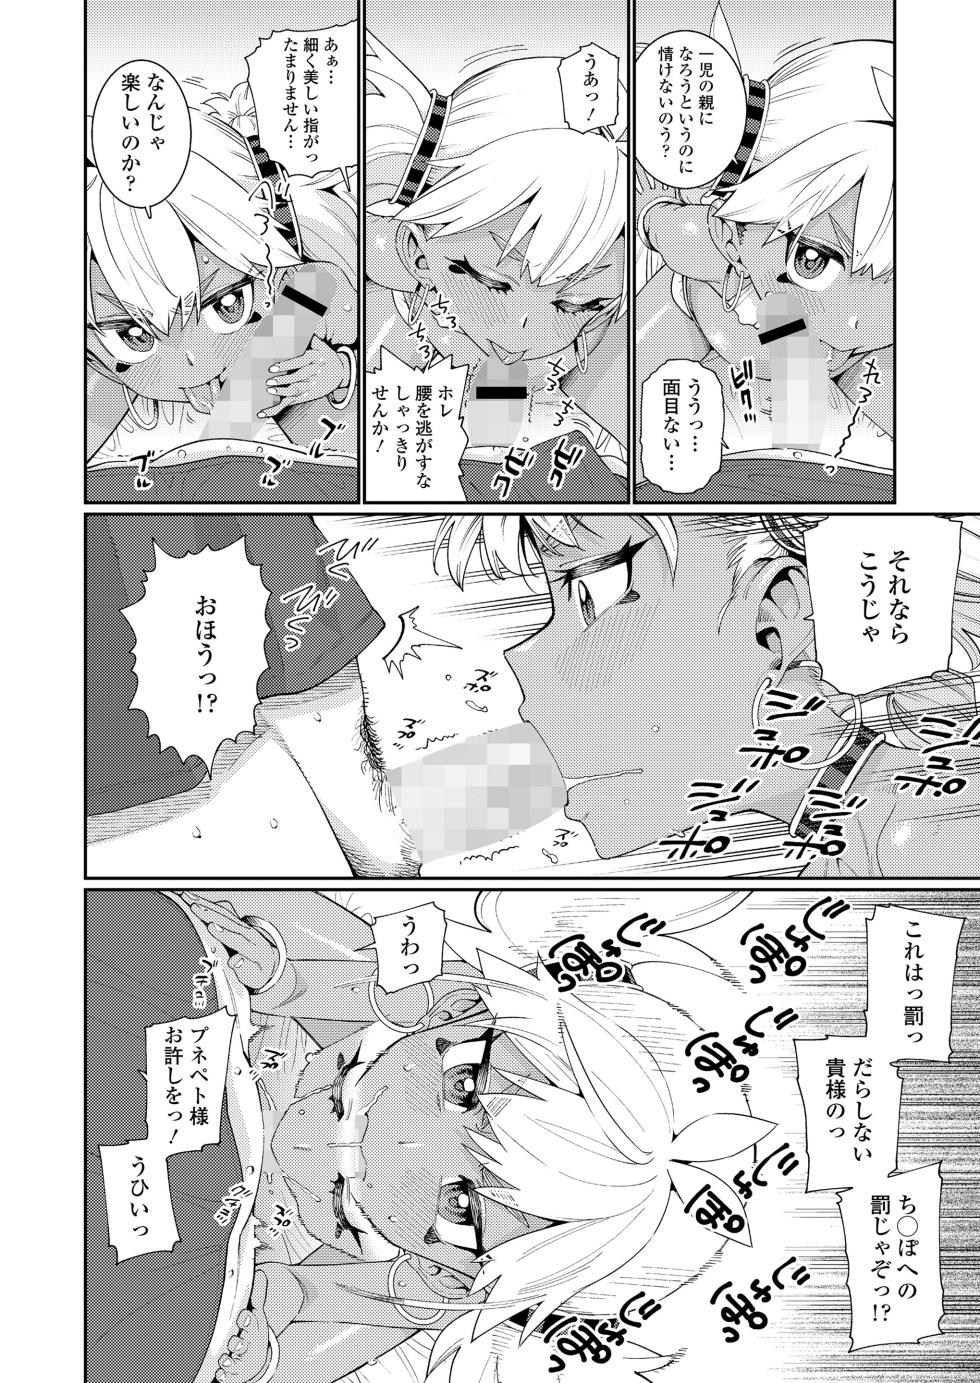 Towako 16 [Digital] - Page 12